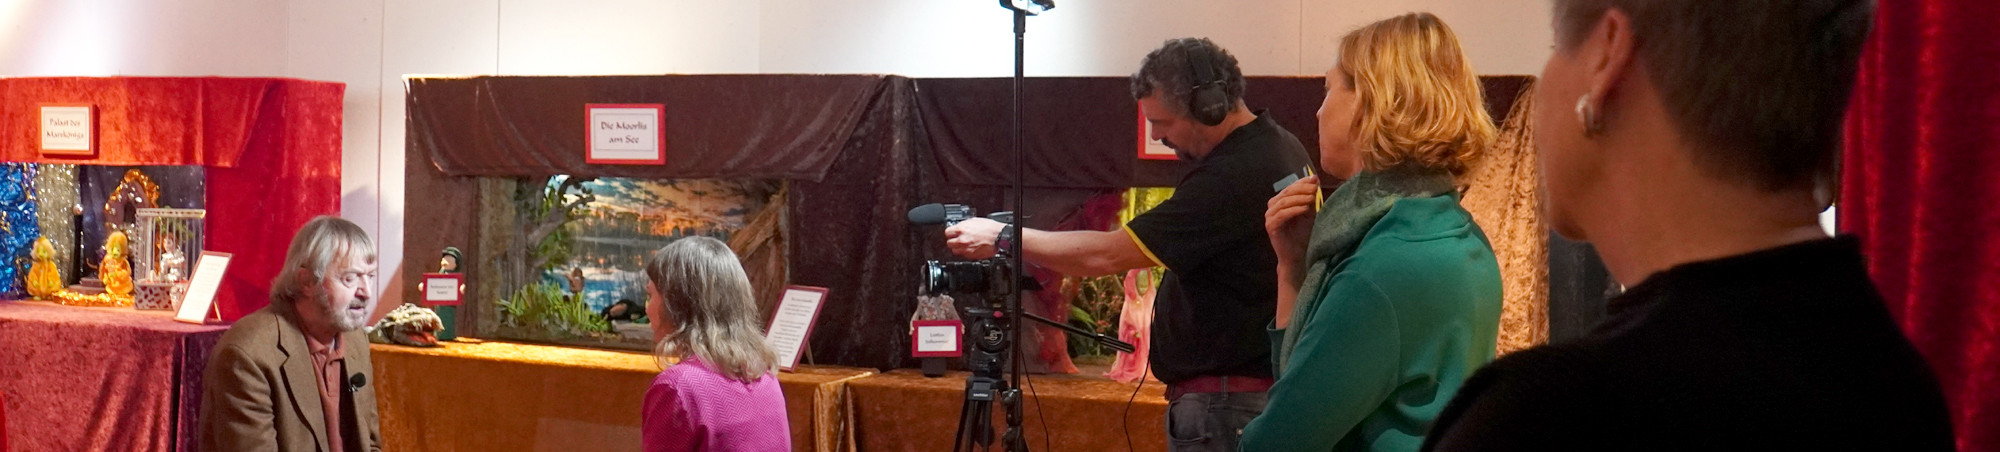 In der Bildmitte Baut der Kameramann seine Technik auf. Auf der linken Seite sind Kurator und Redakteurin im Gespräch. Zwei Zuschauer beobachten die Szene.